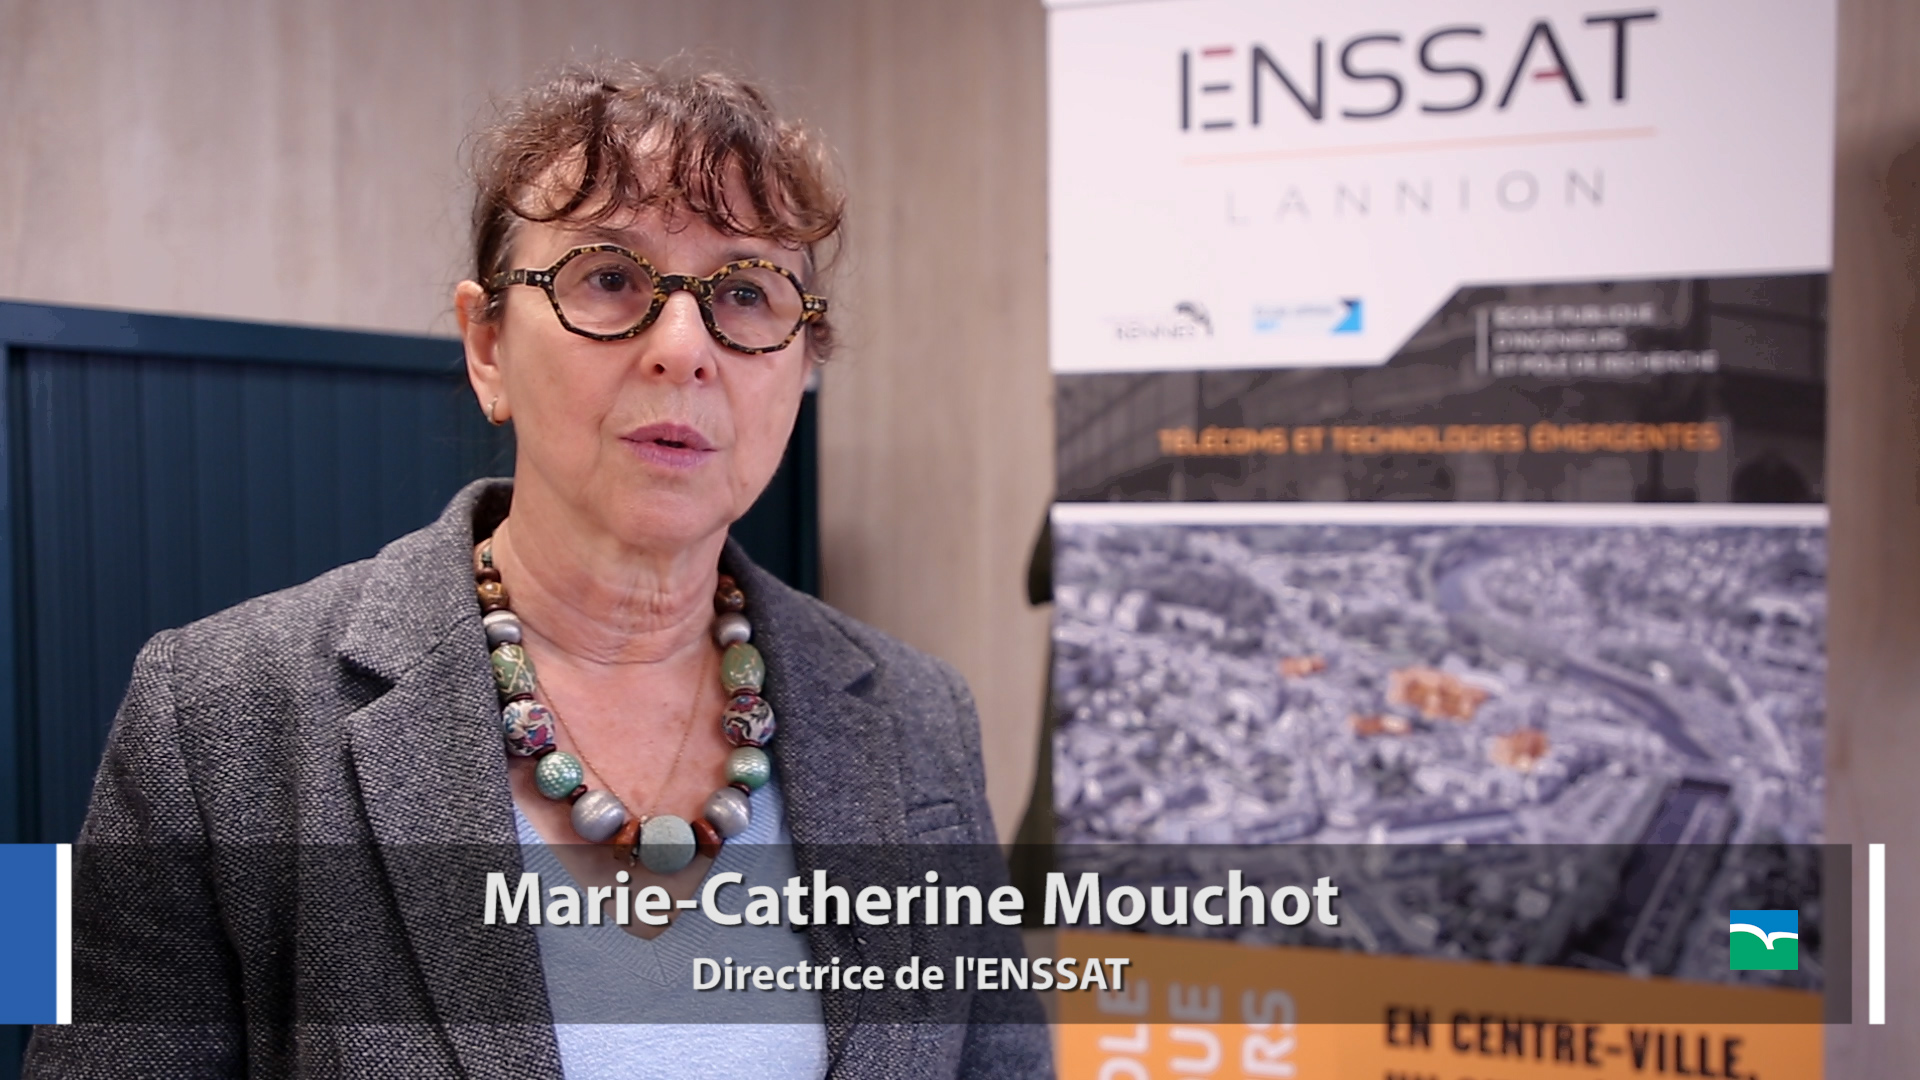 Marie-Catherine Mouchot, directrice de l'ENSSAT